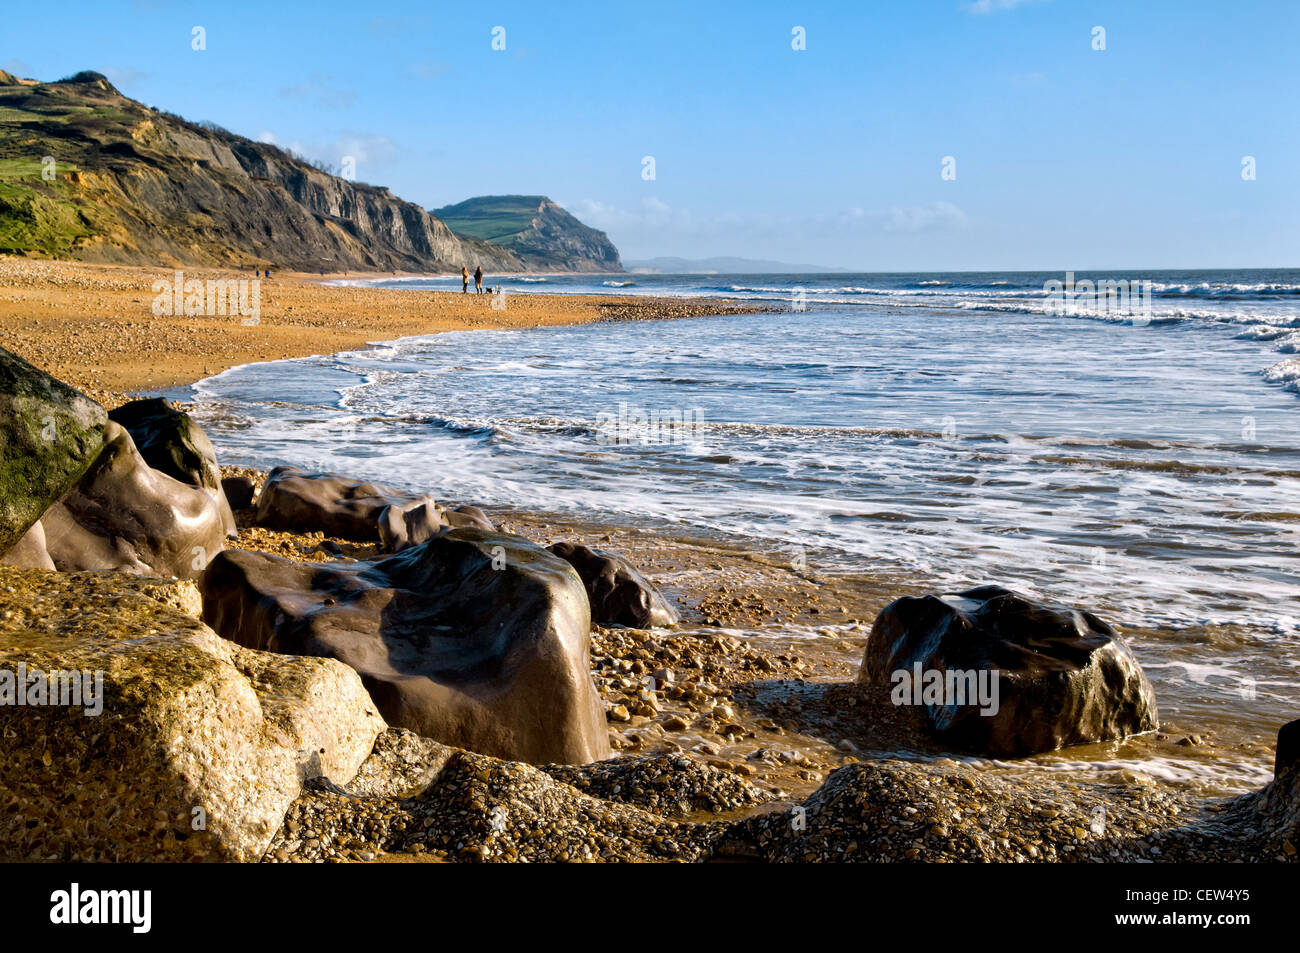 Charmouth plage sur la côte jurassique à Charmouth, Dorset, UK prise le jour ensoleillé en hiver Banque D'Images